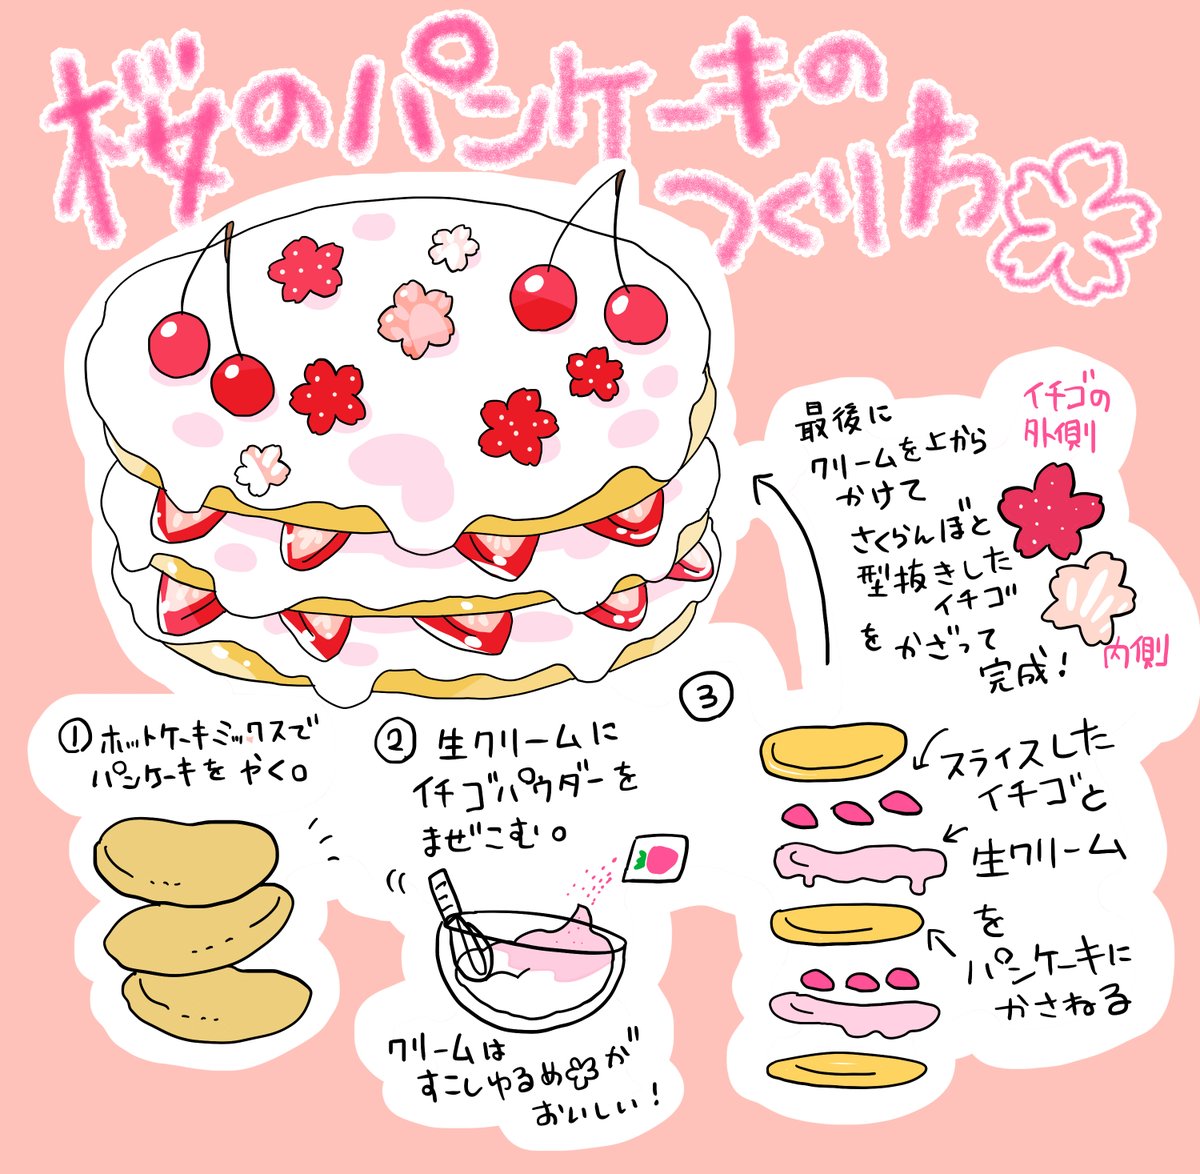 ?桜のパンケーキ?のレシピ公開しました♪
#桜カガミネカフェ
レシピの詳細はFANBOXでも公開してます。↓
https://t.co/HXAXWlb3Ei 